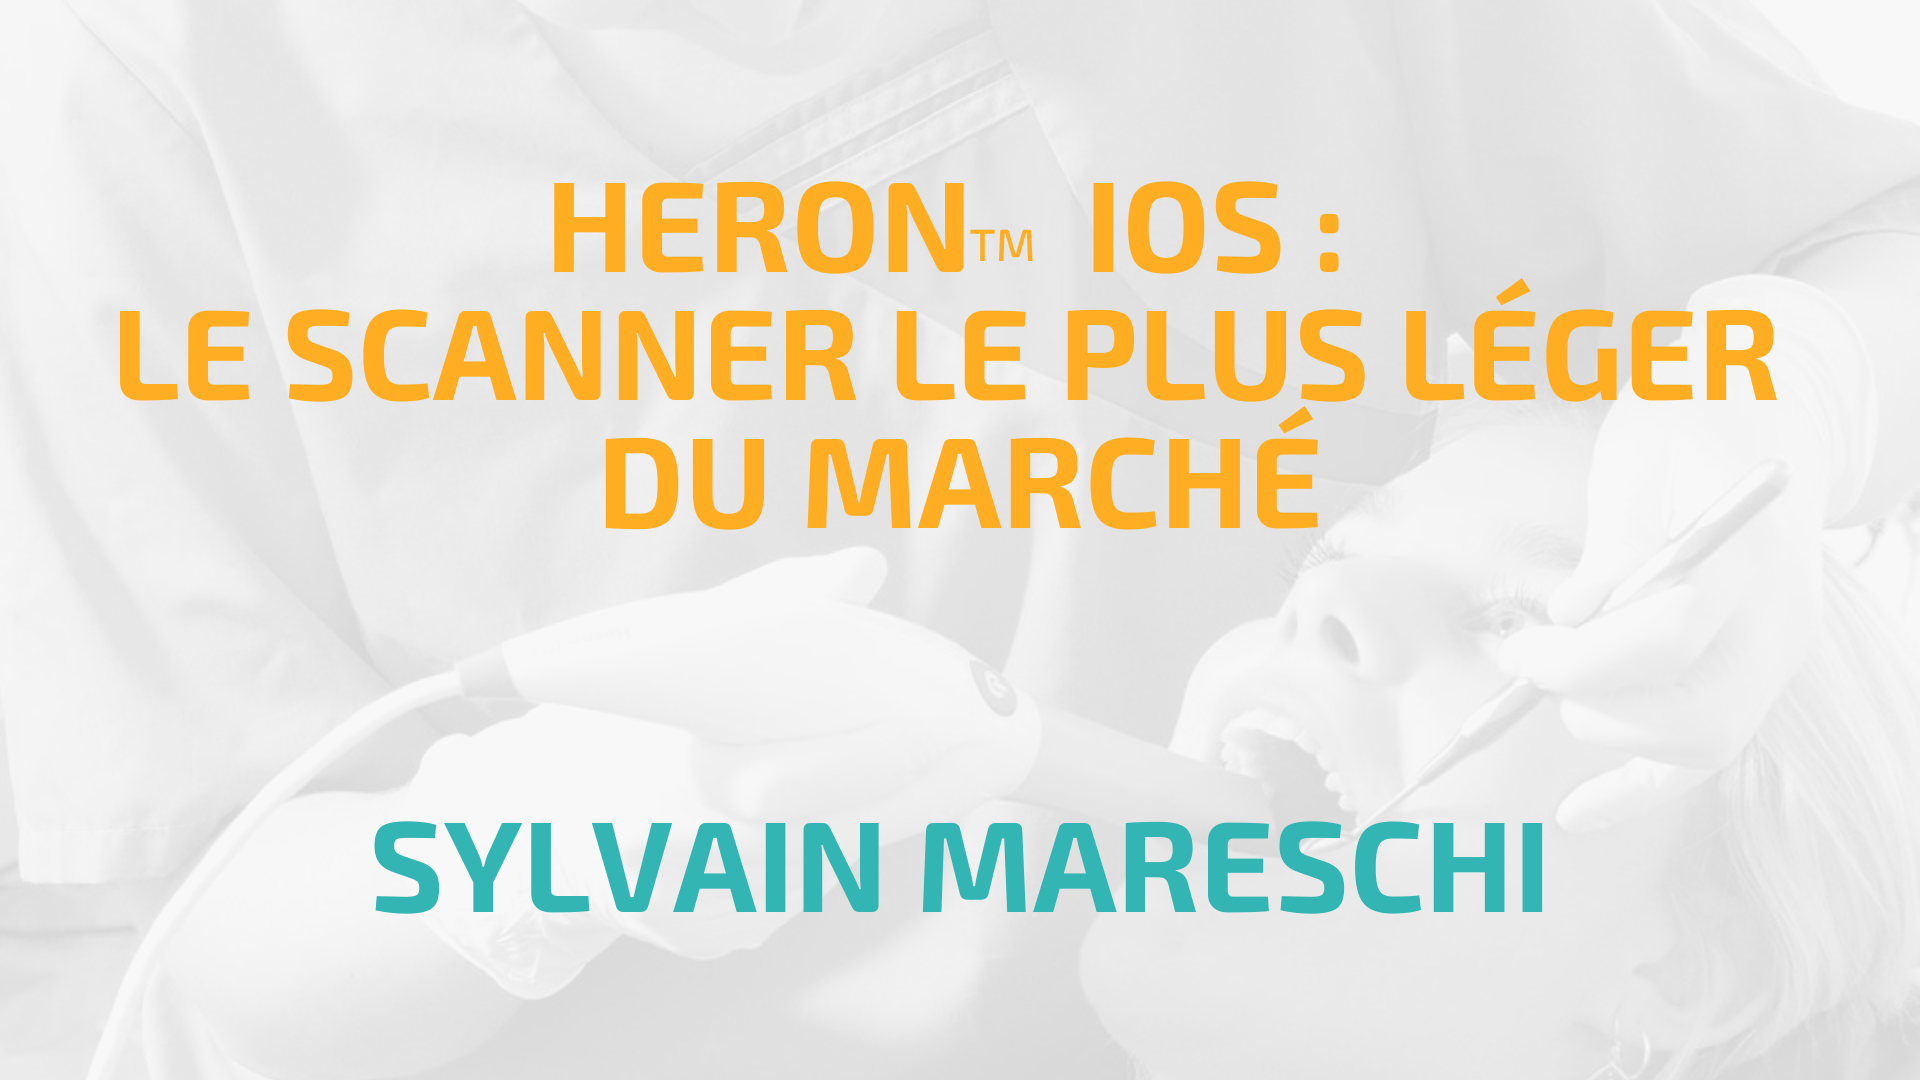 SCANNER HERONtm IOS : Présentation par le DR Sylvain Mareschi